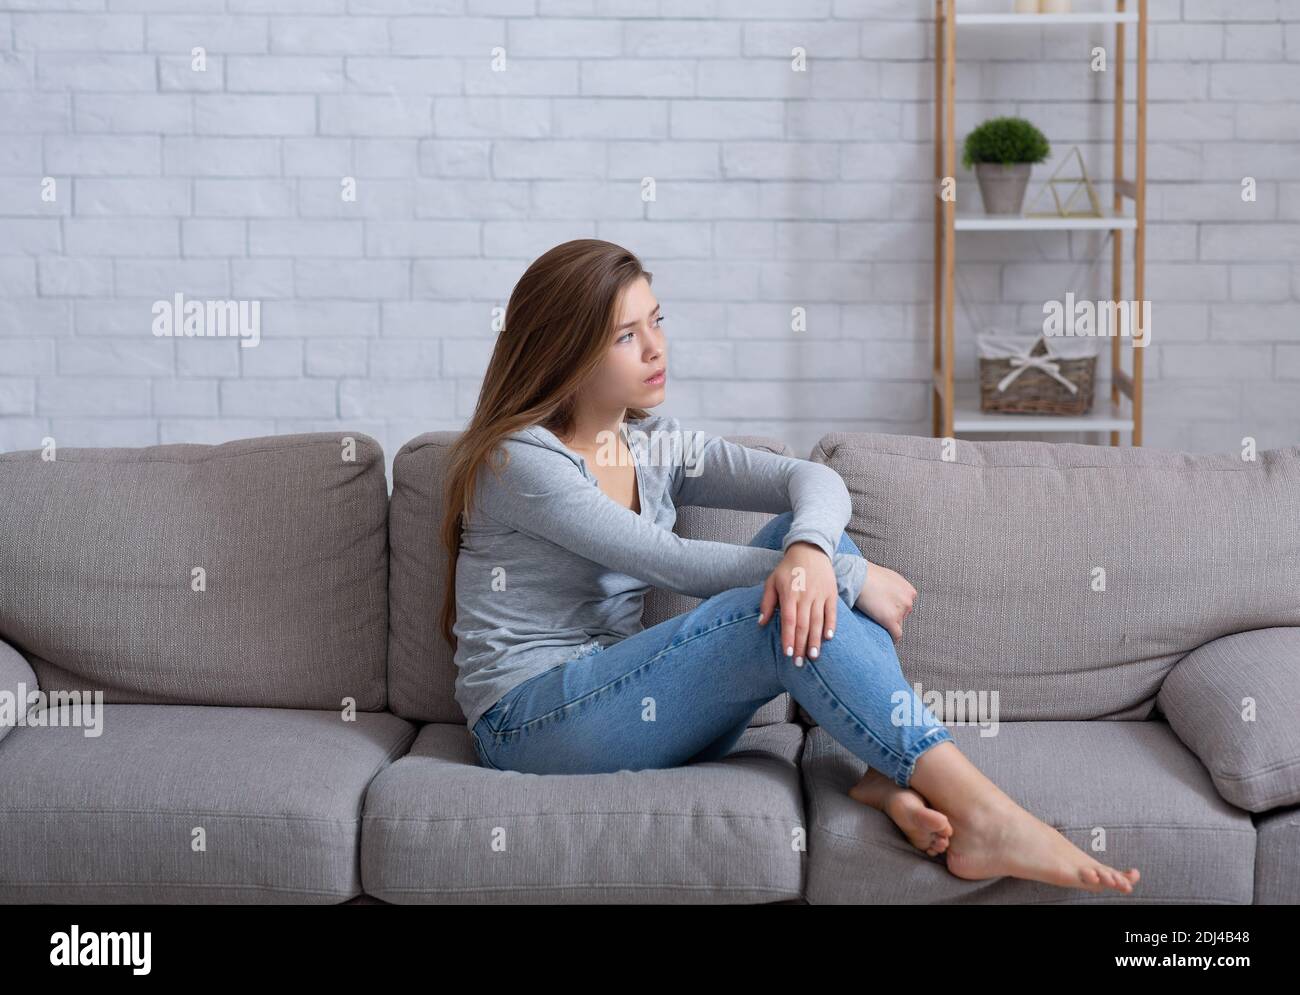 Einsame junge Dame, die zu Hause auf dem Sofa sitzt, sich deprimiert und frustriert fühlt, an emotionaler Erschöpfung leidet Stockfoto